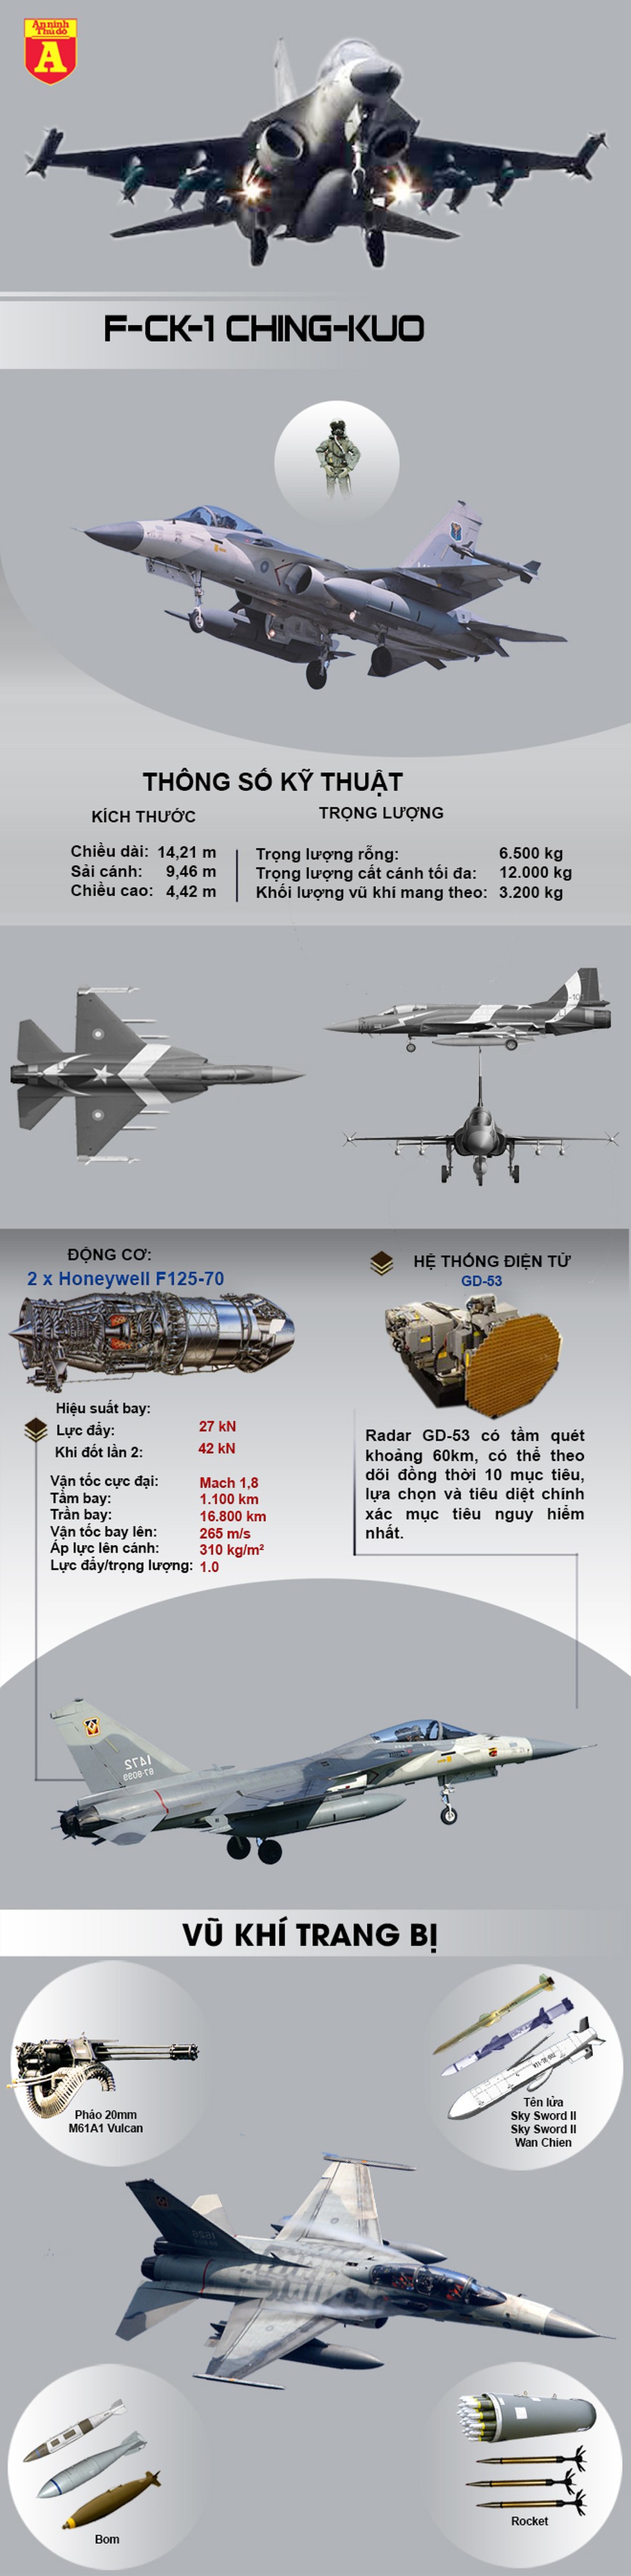 [Infographics] Chiến đấu cơ tự sản xuất của đảo Đài Loan mạnh ngang ngửa với J-10 Trung Quốc - Ảnh 1